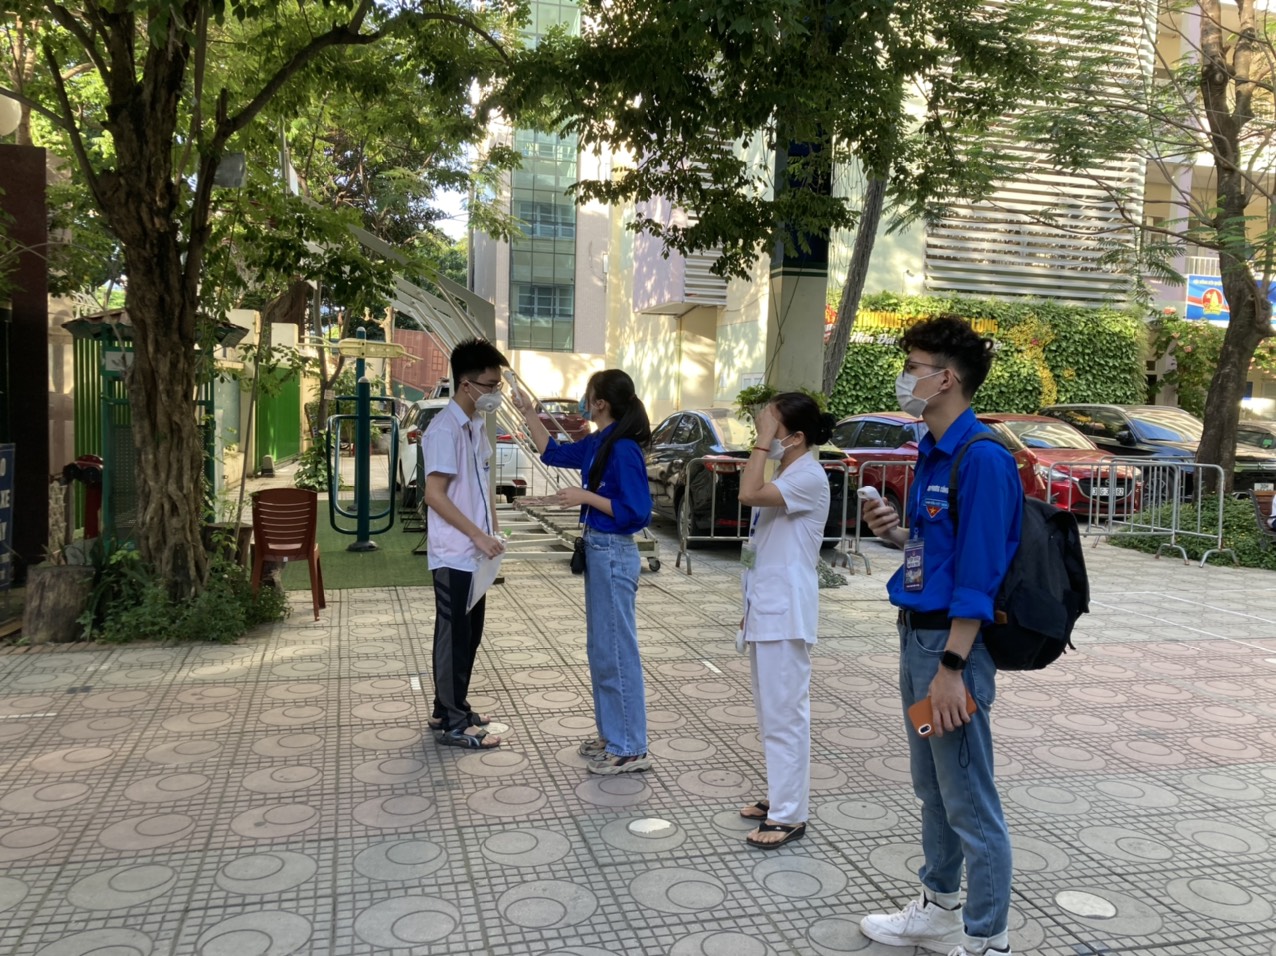 Thí sinh Hà Nội đến điểm thi sớm để tránh nắng, sẵn sàng môn thi cuối - Báo Giáo dục và Thời đại Online